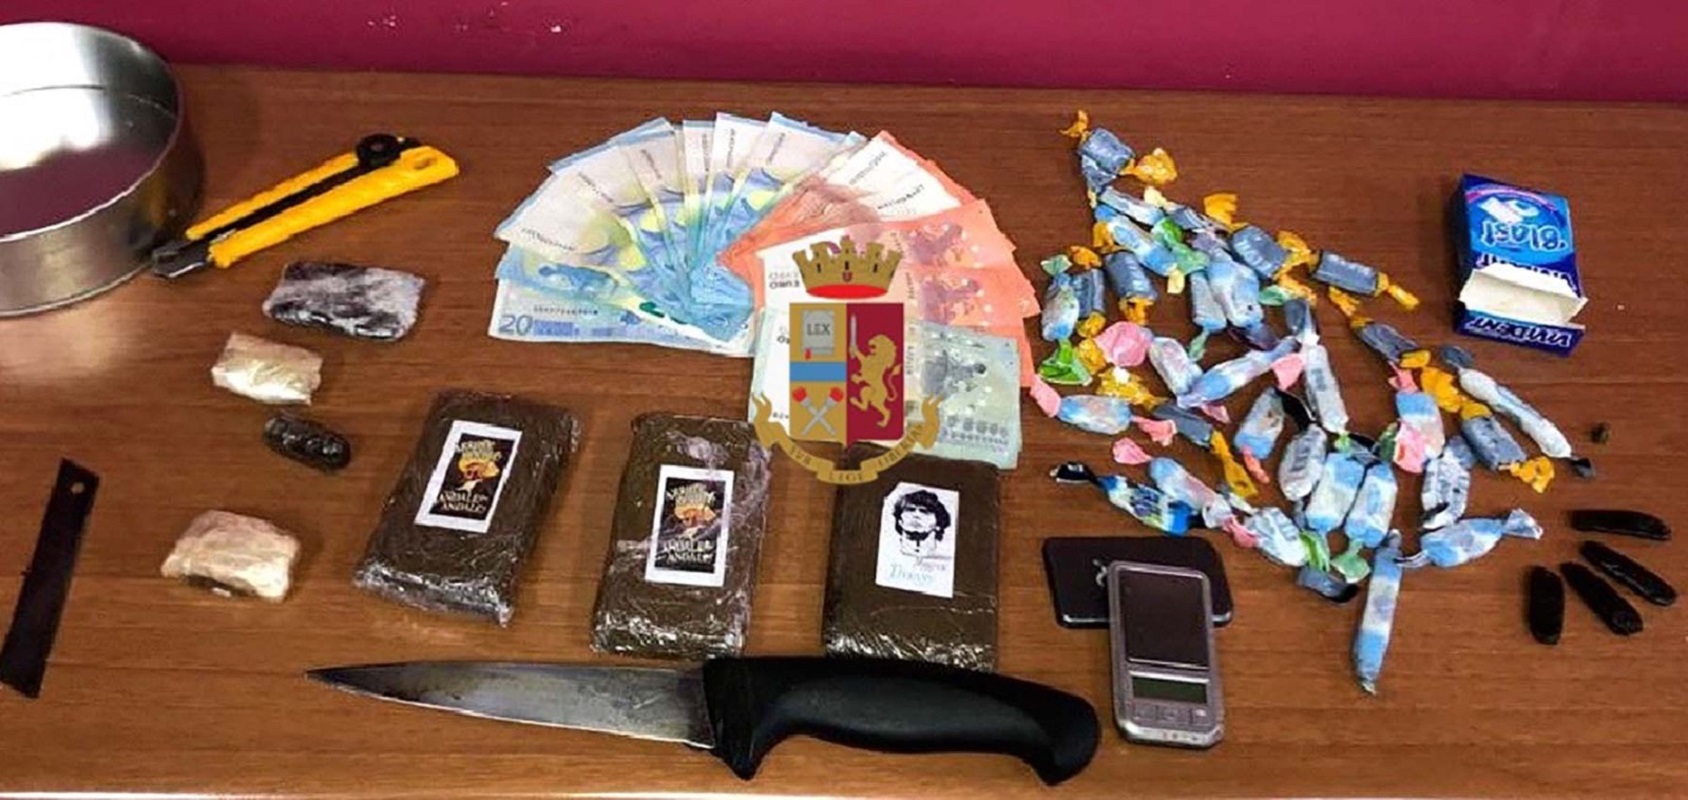 Napoli, nascondeva droga in casa: arrestato 50enne